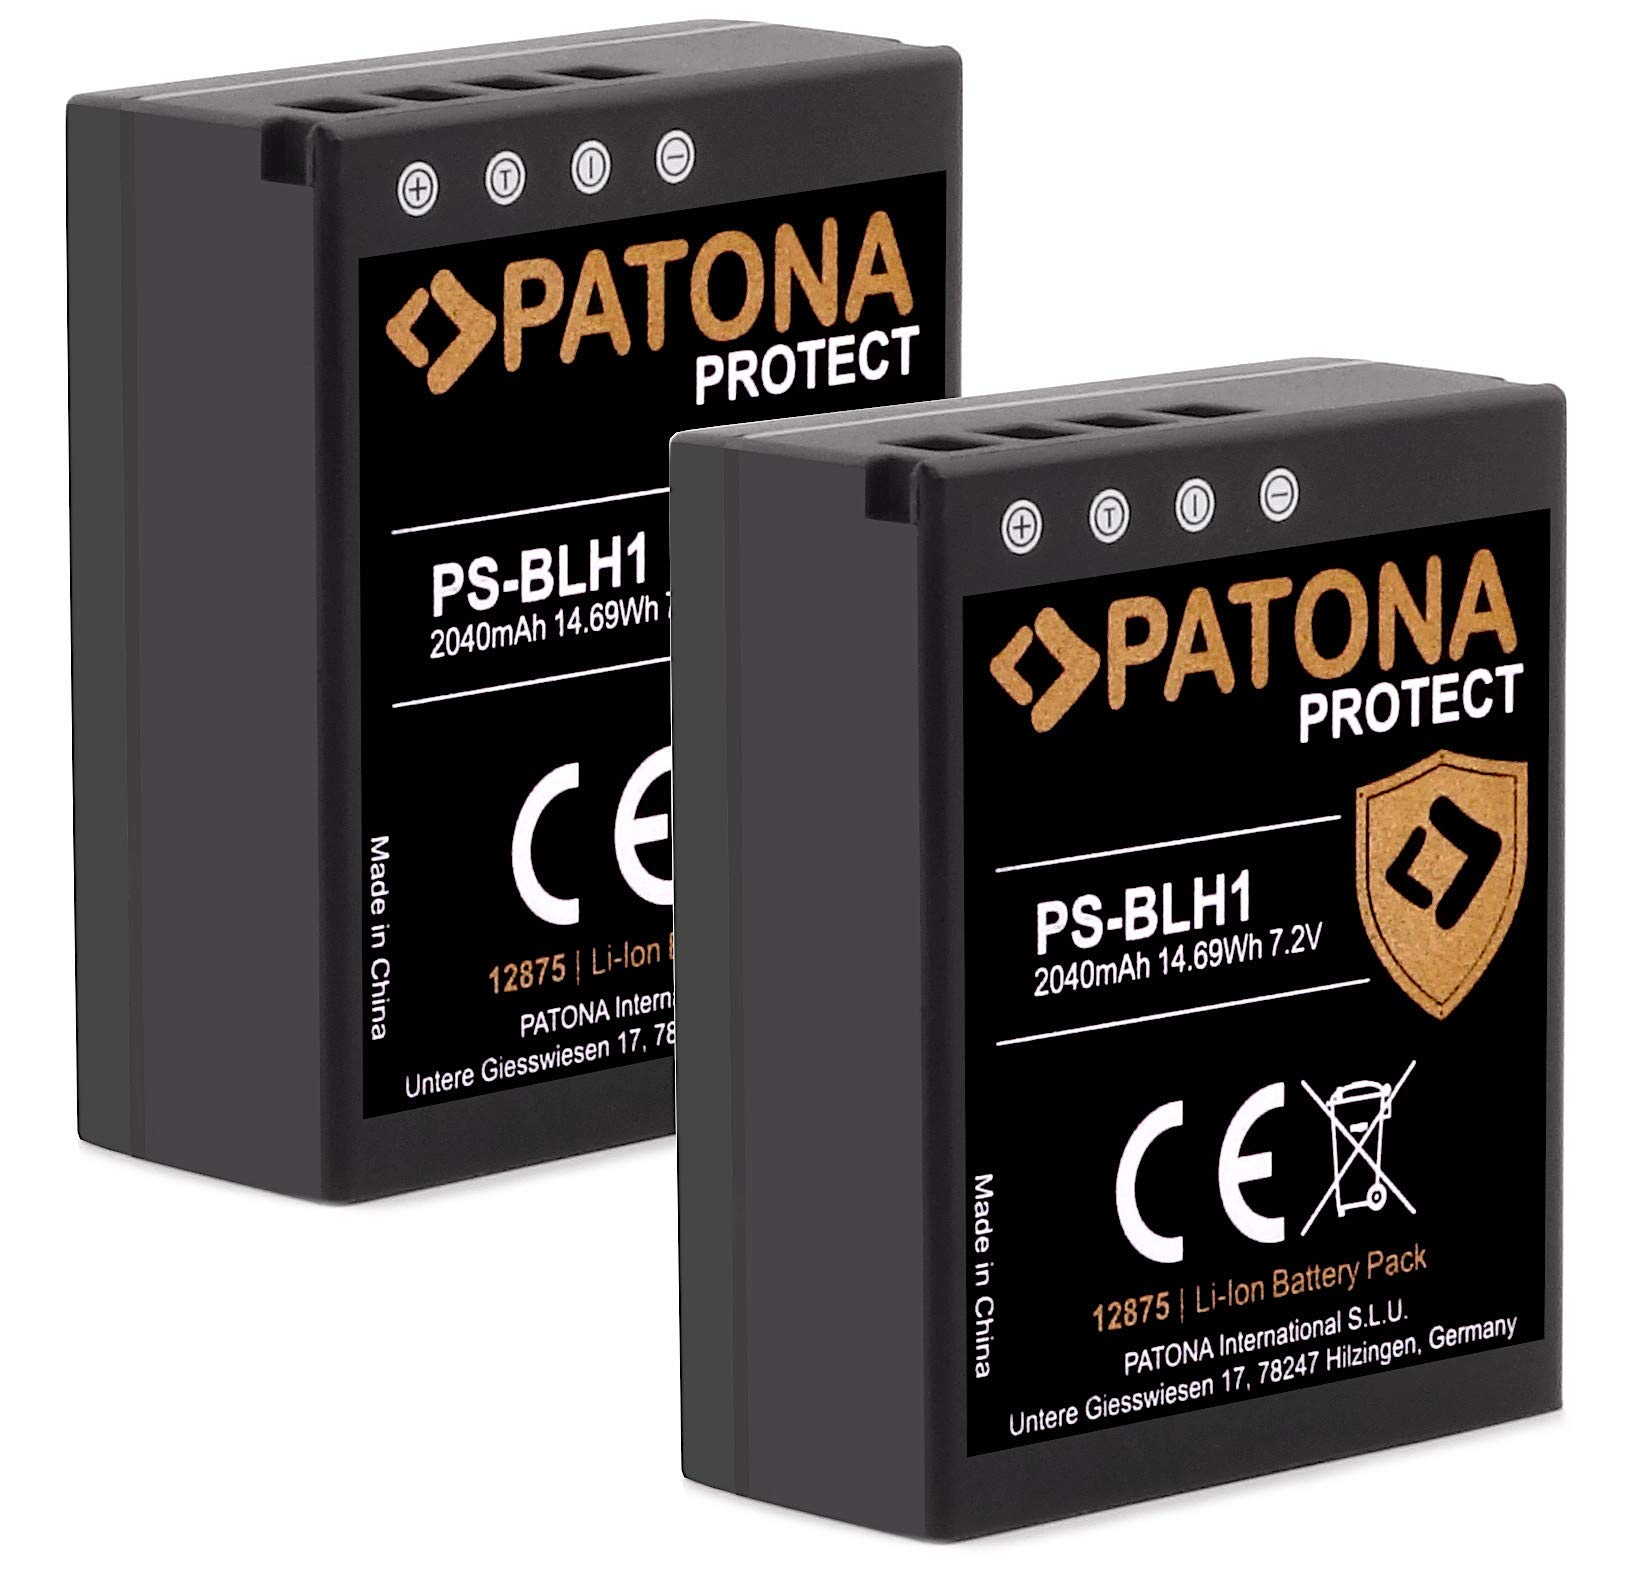 PATONA Protect BLH-1 PS-BLH-1 Akkus (2X 2040mAh) mit NTC Sensor und V1 Gehäuse - Intelligentes Akkusystem - Kompatibel mit Olympus OM-D E-M1 Mark II III und OM-D E-M1X